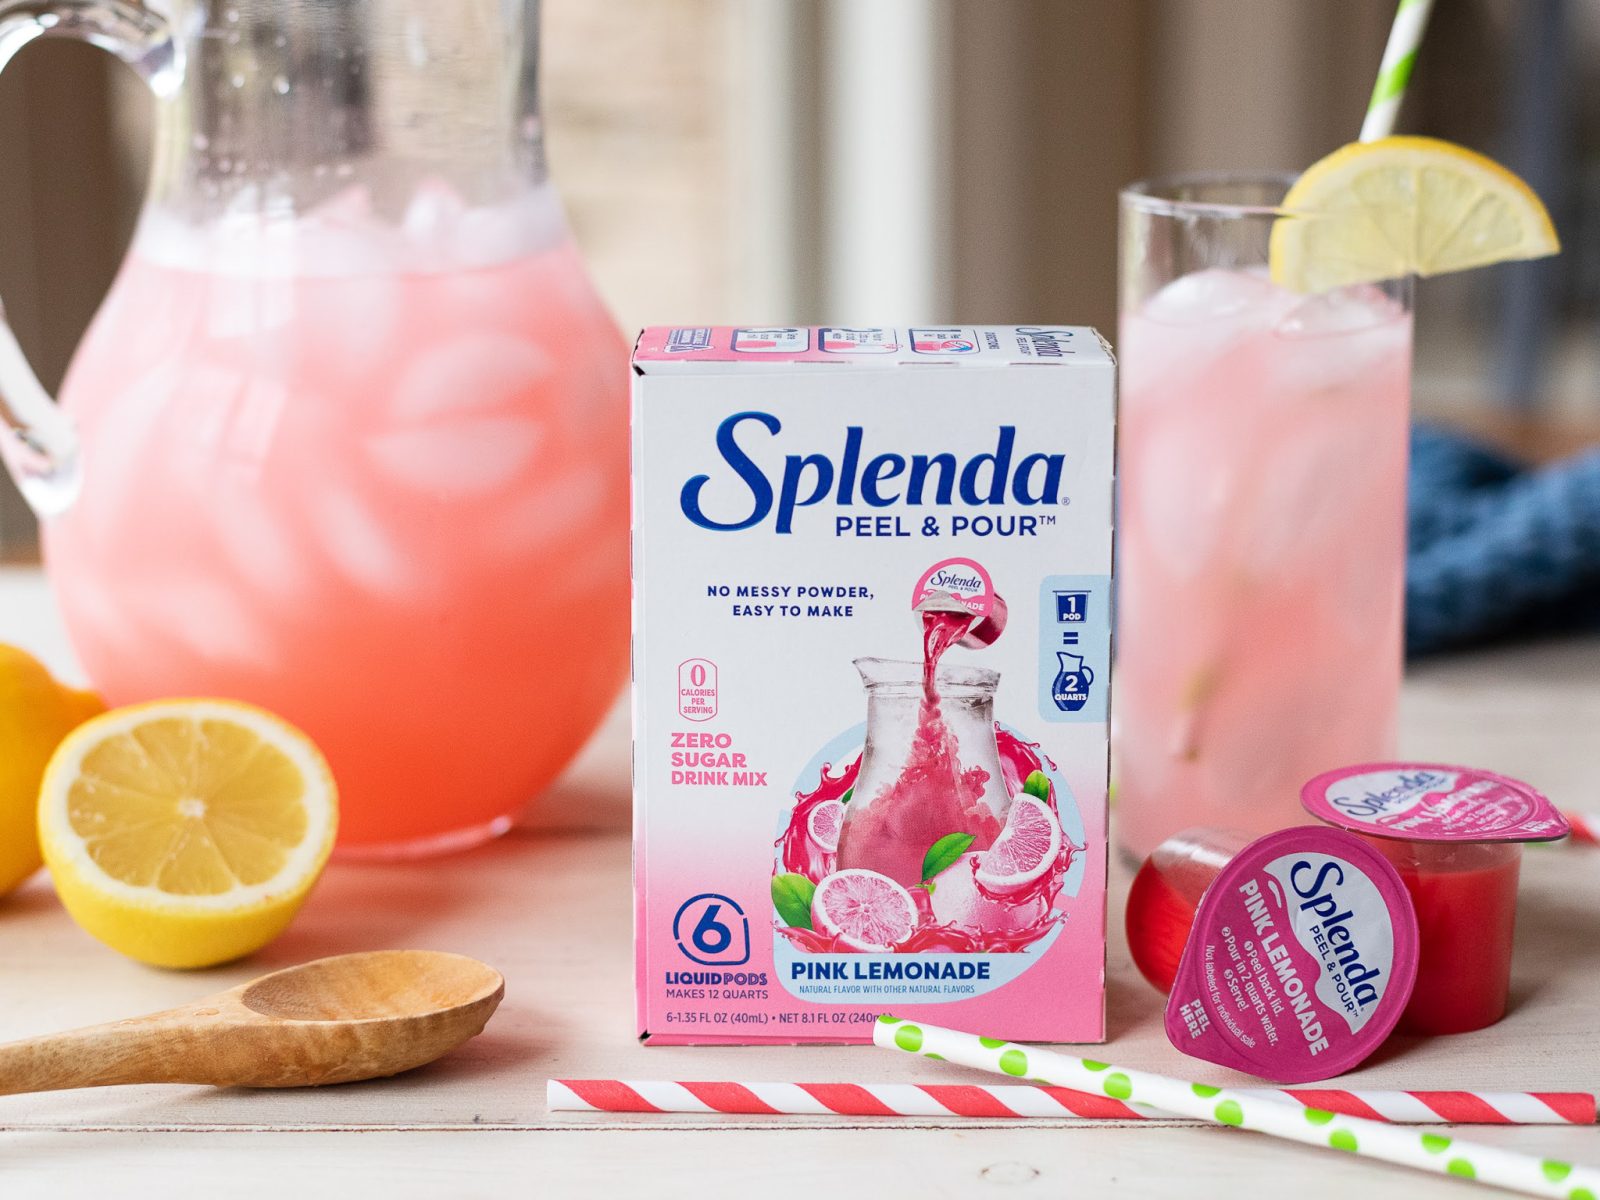 Splenda Peel & Pour Zero Calorie Drink Mix - Fruit Punch